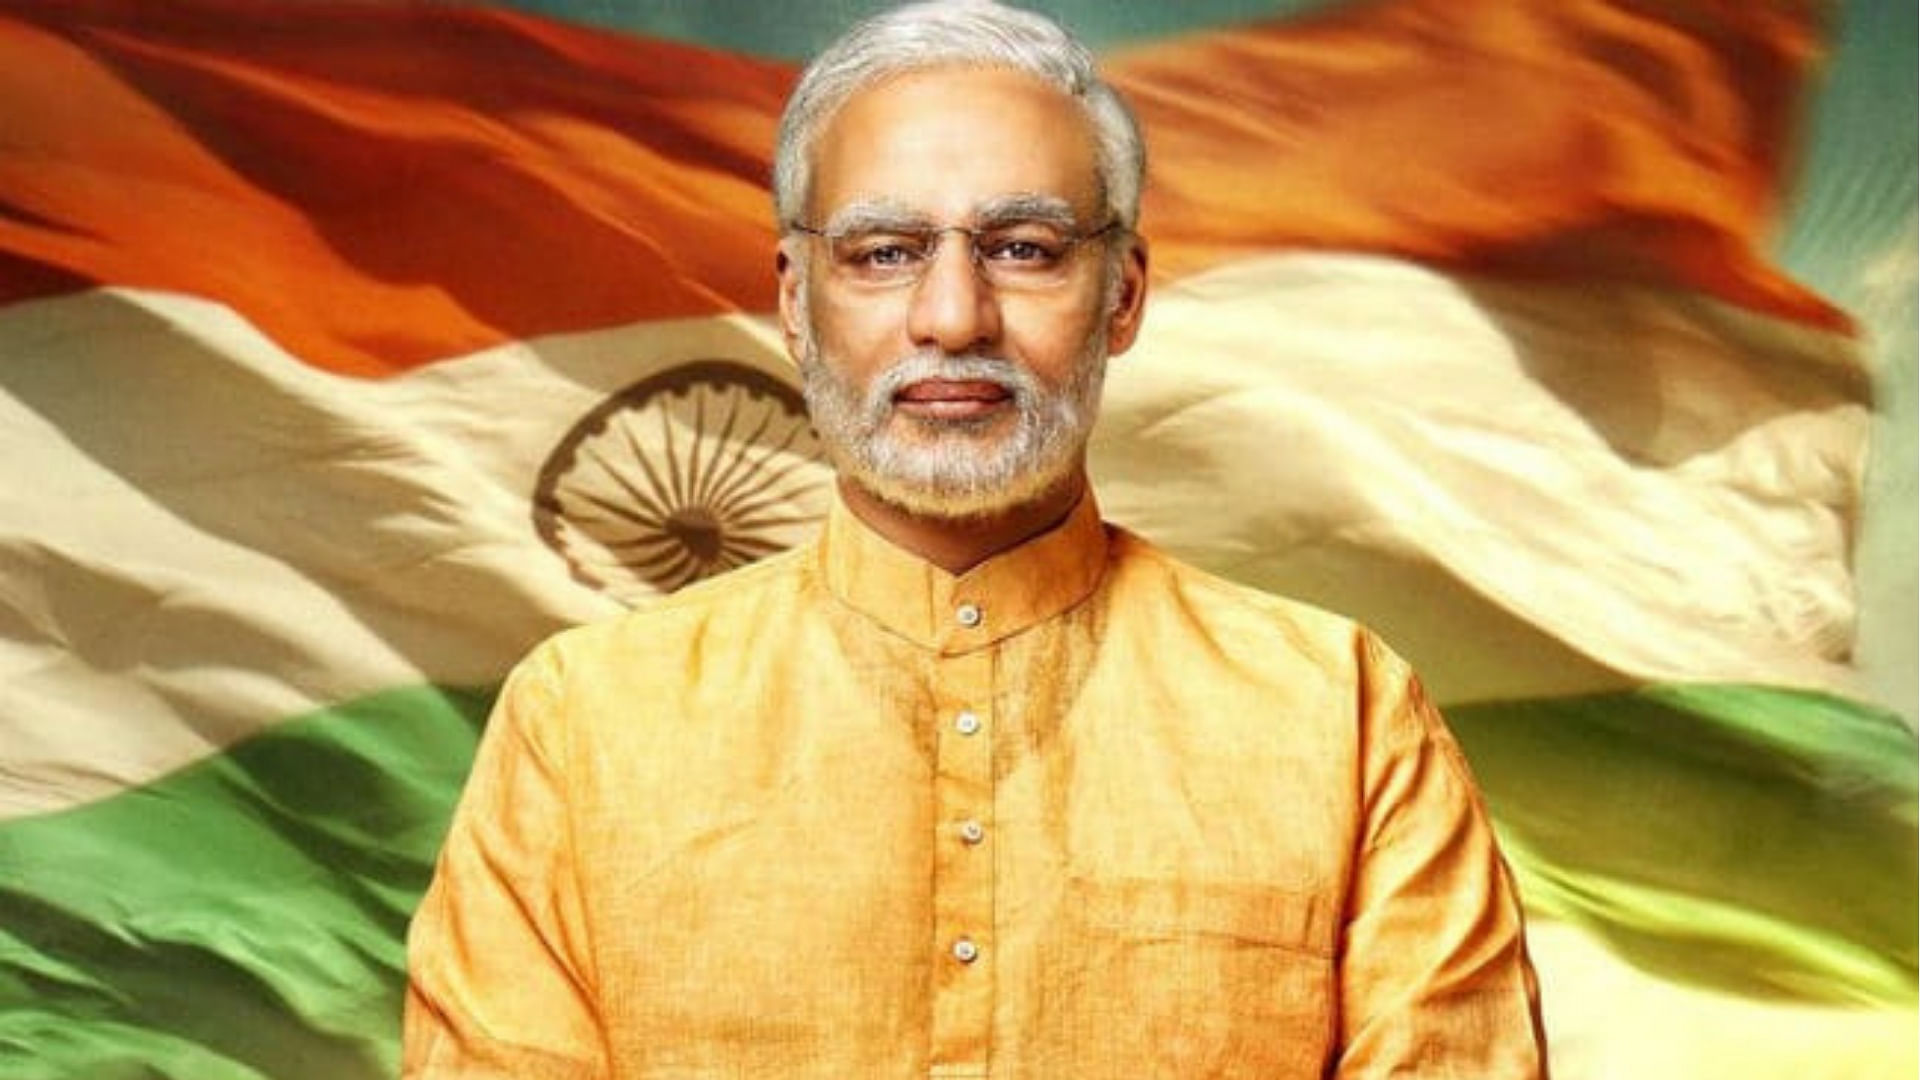 Vivek Oberoi as PM Modi in the biopic ‘PM Narendra Modi’.